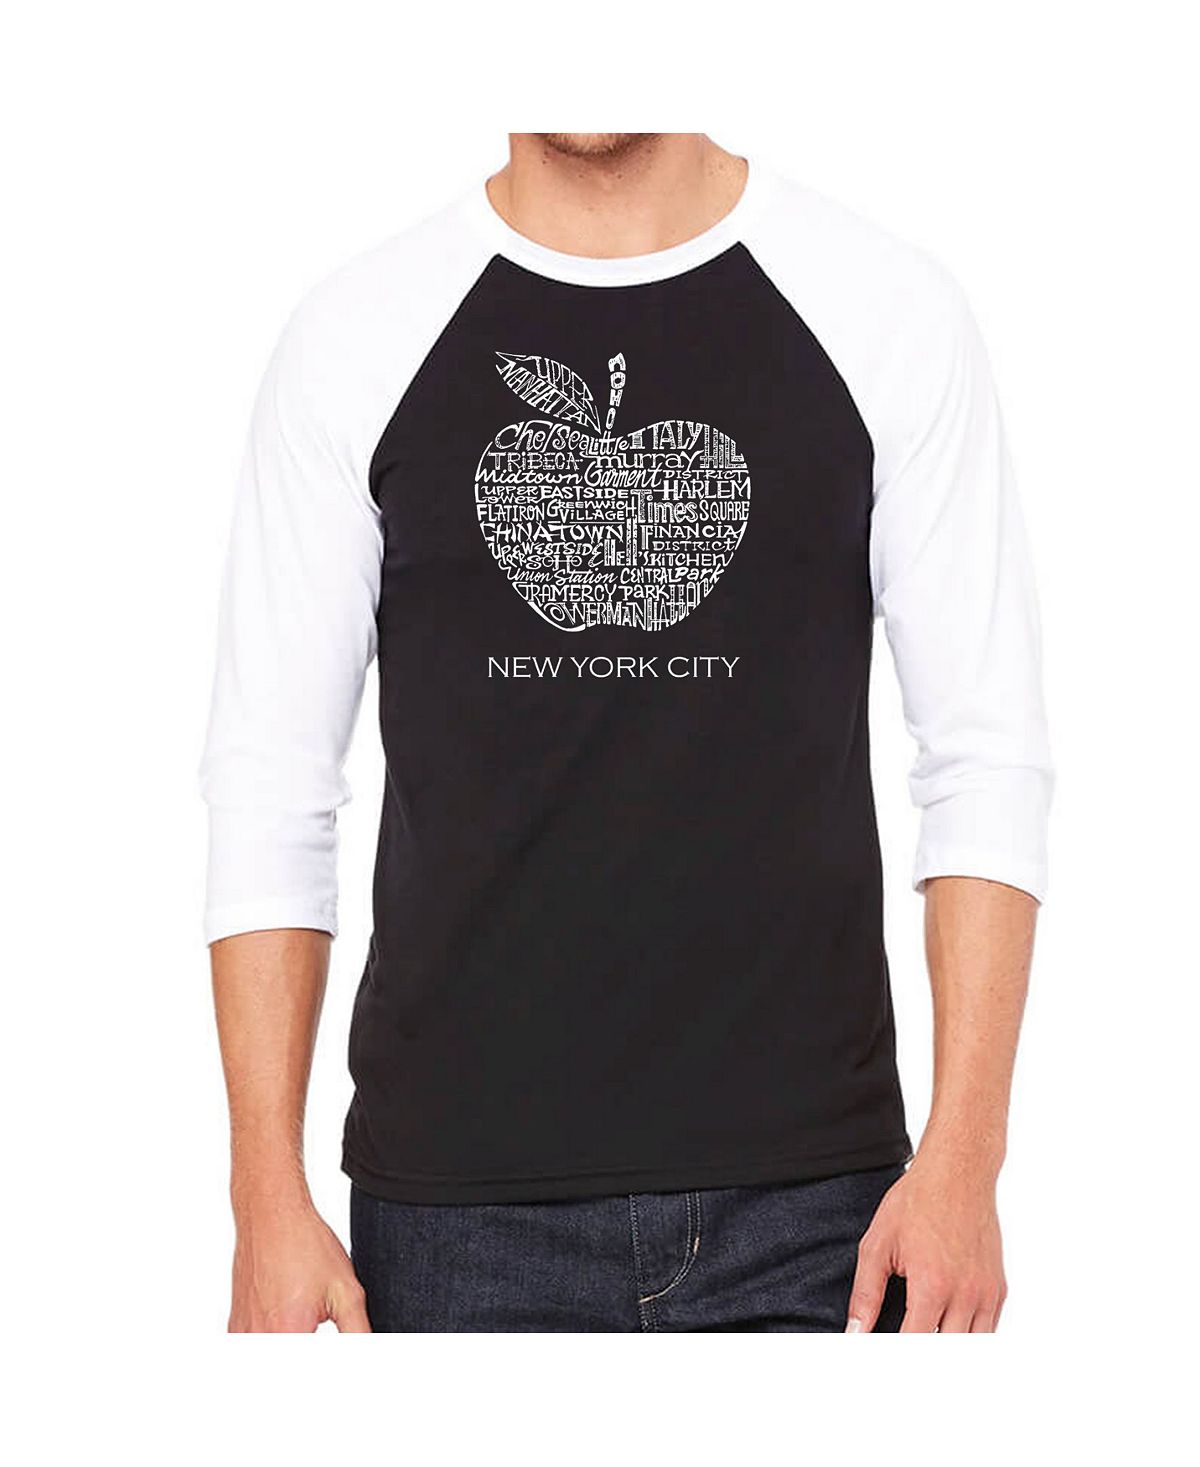 Мужская футболка с надписью reglan и надписью neighborhoods in new york city LA Pop Art, черный new york city skyl2021 eric emanuel ee brand men